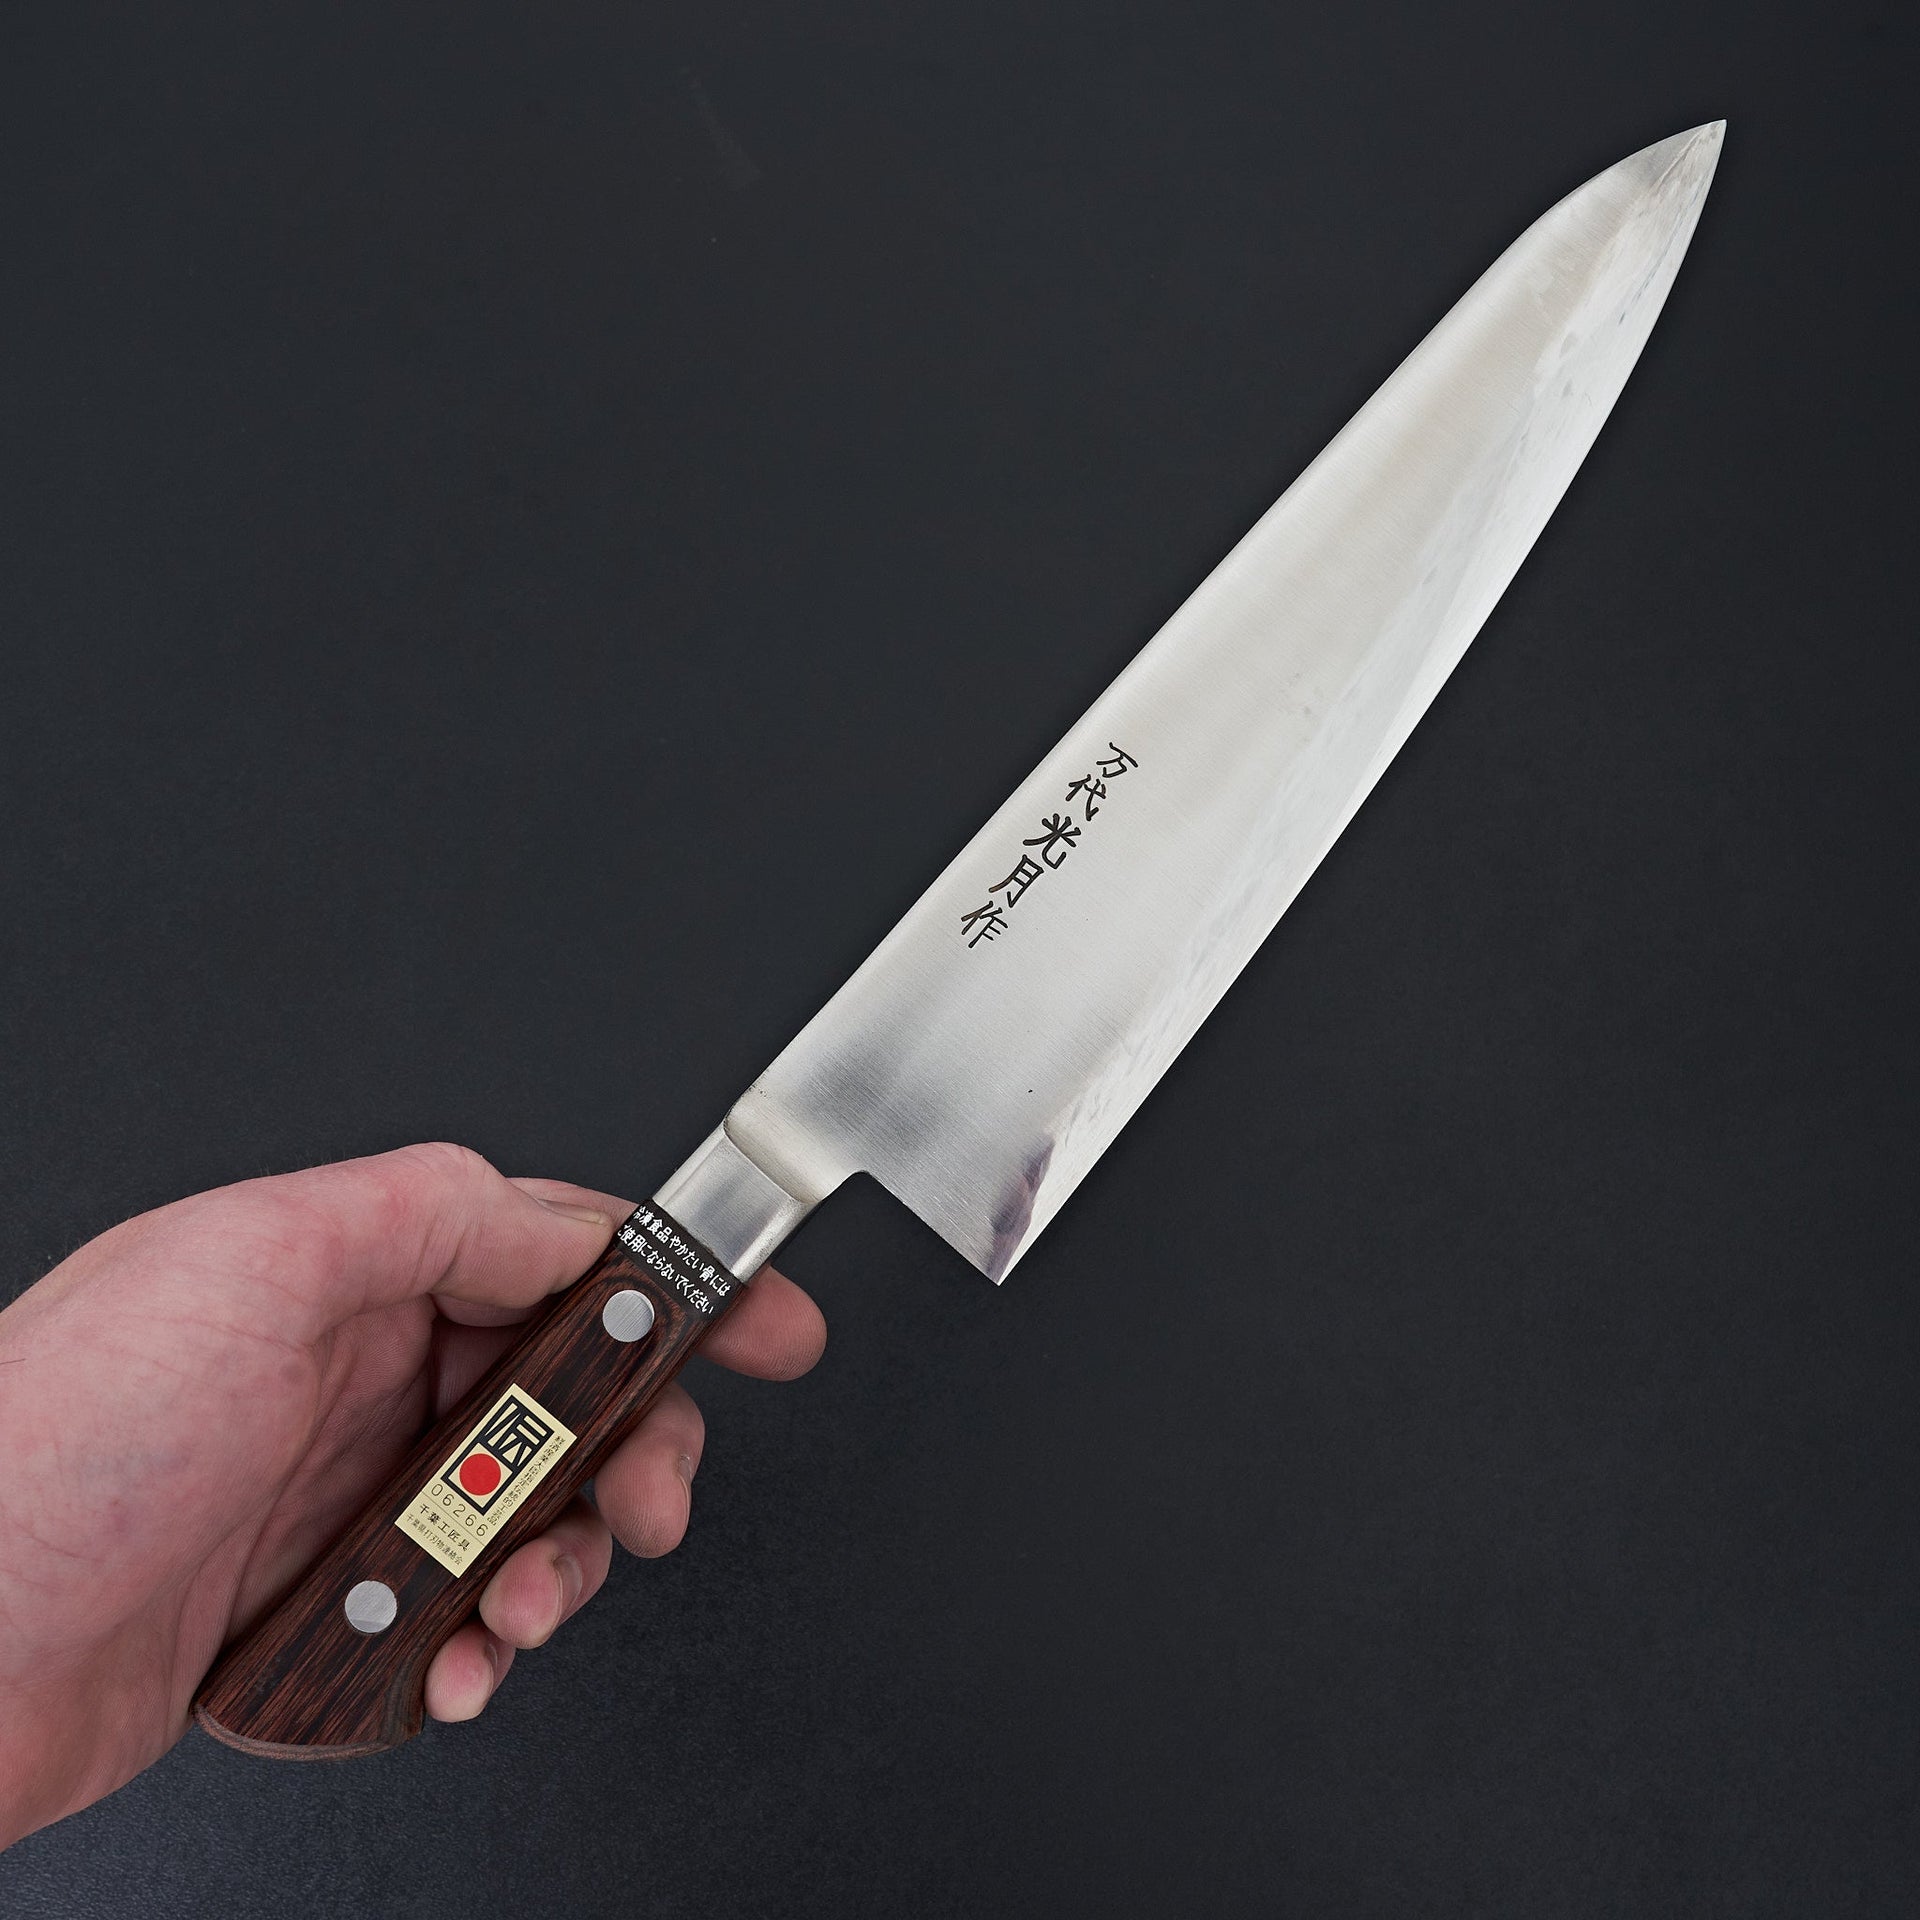 Kogetsu Mandai Stainless Gyuto 240mm Imitation Mahogany Handle-Knife-Kogetsu-Carbon Knife Co